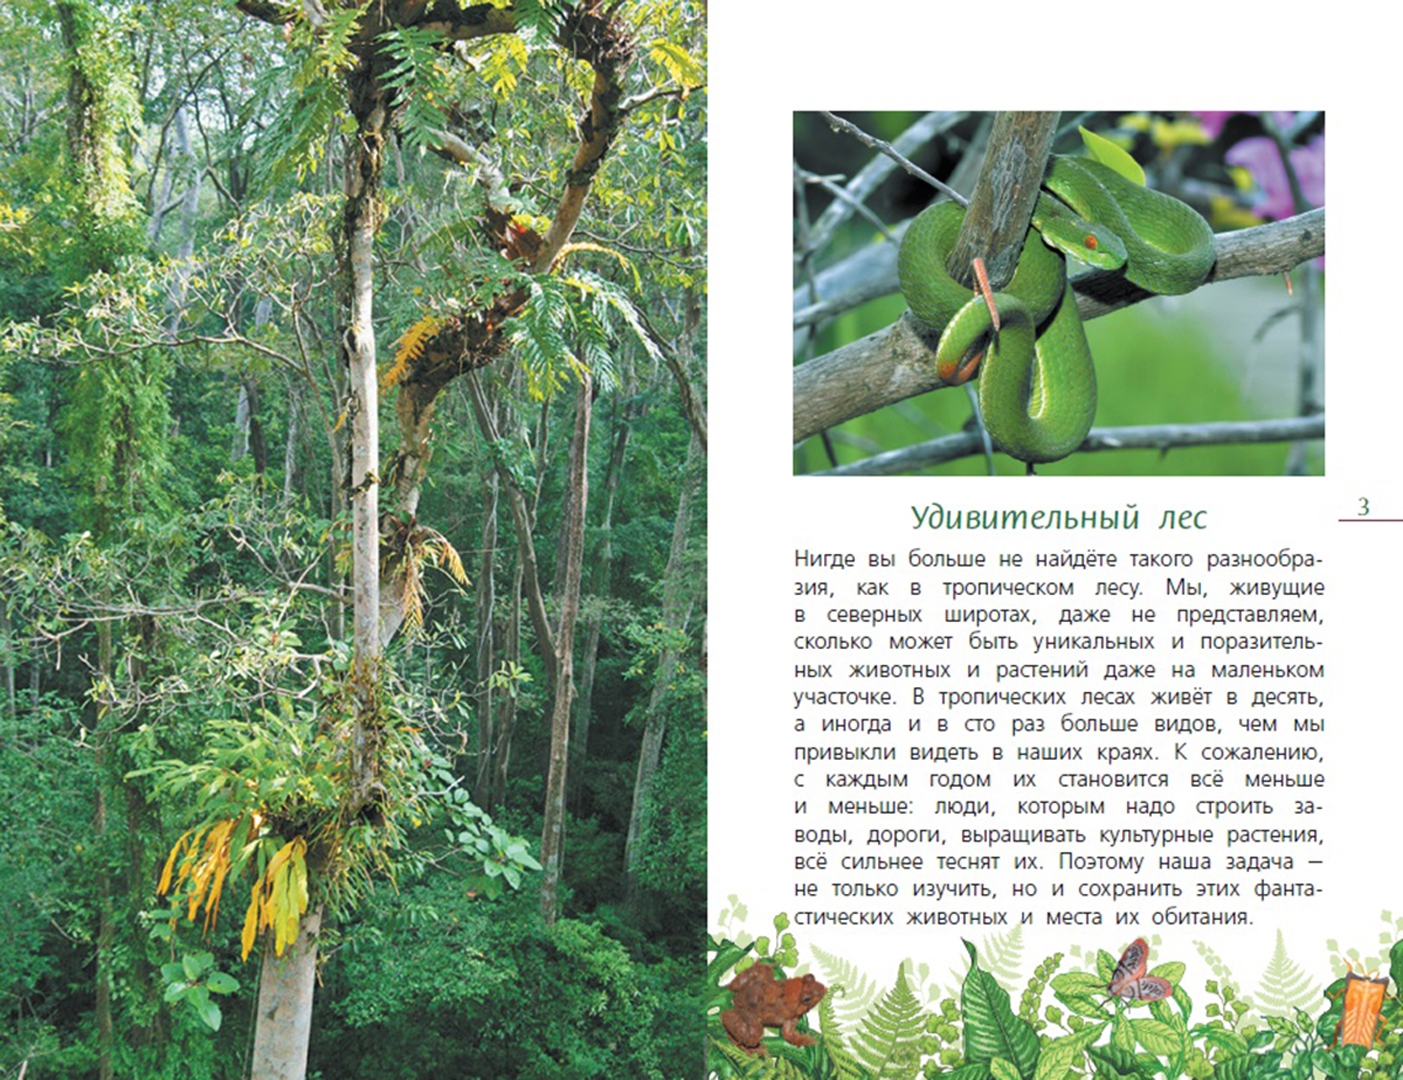 Иллюстрация 1 из 6 для Тропический лес - Эдуард Галоян | Лабиринт - книги. Источник: Лабиринт